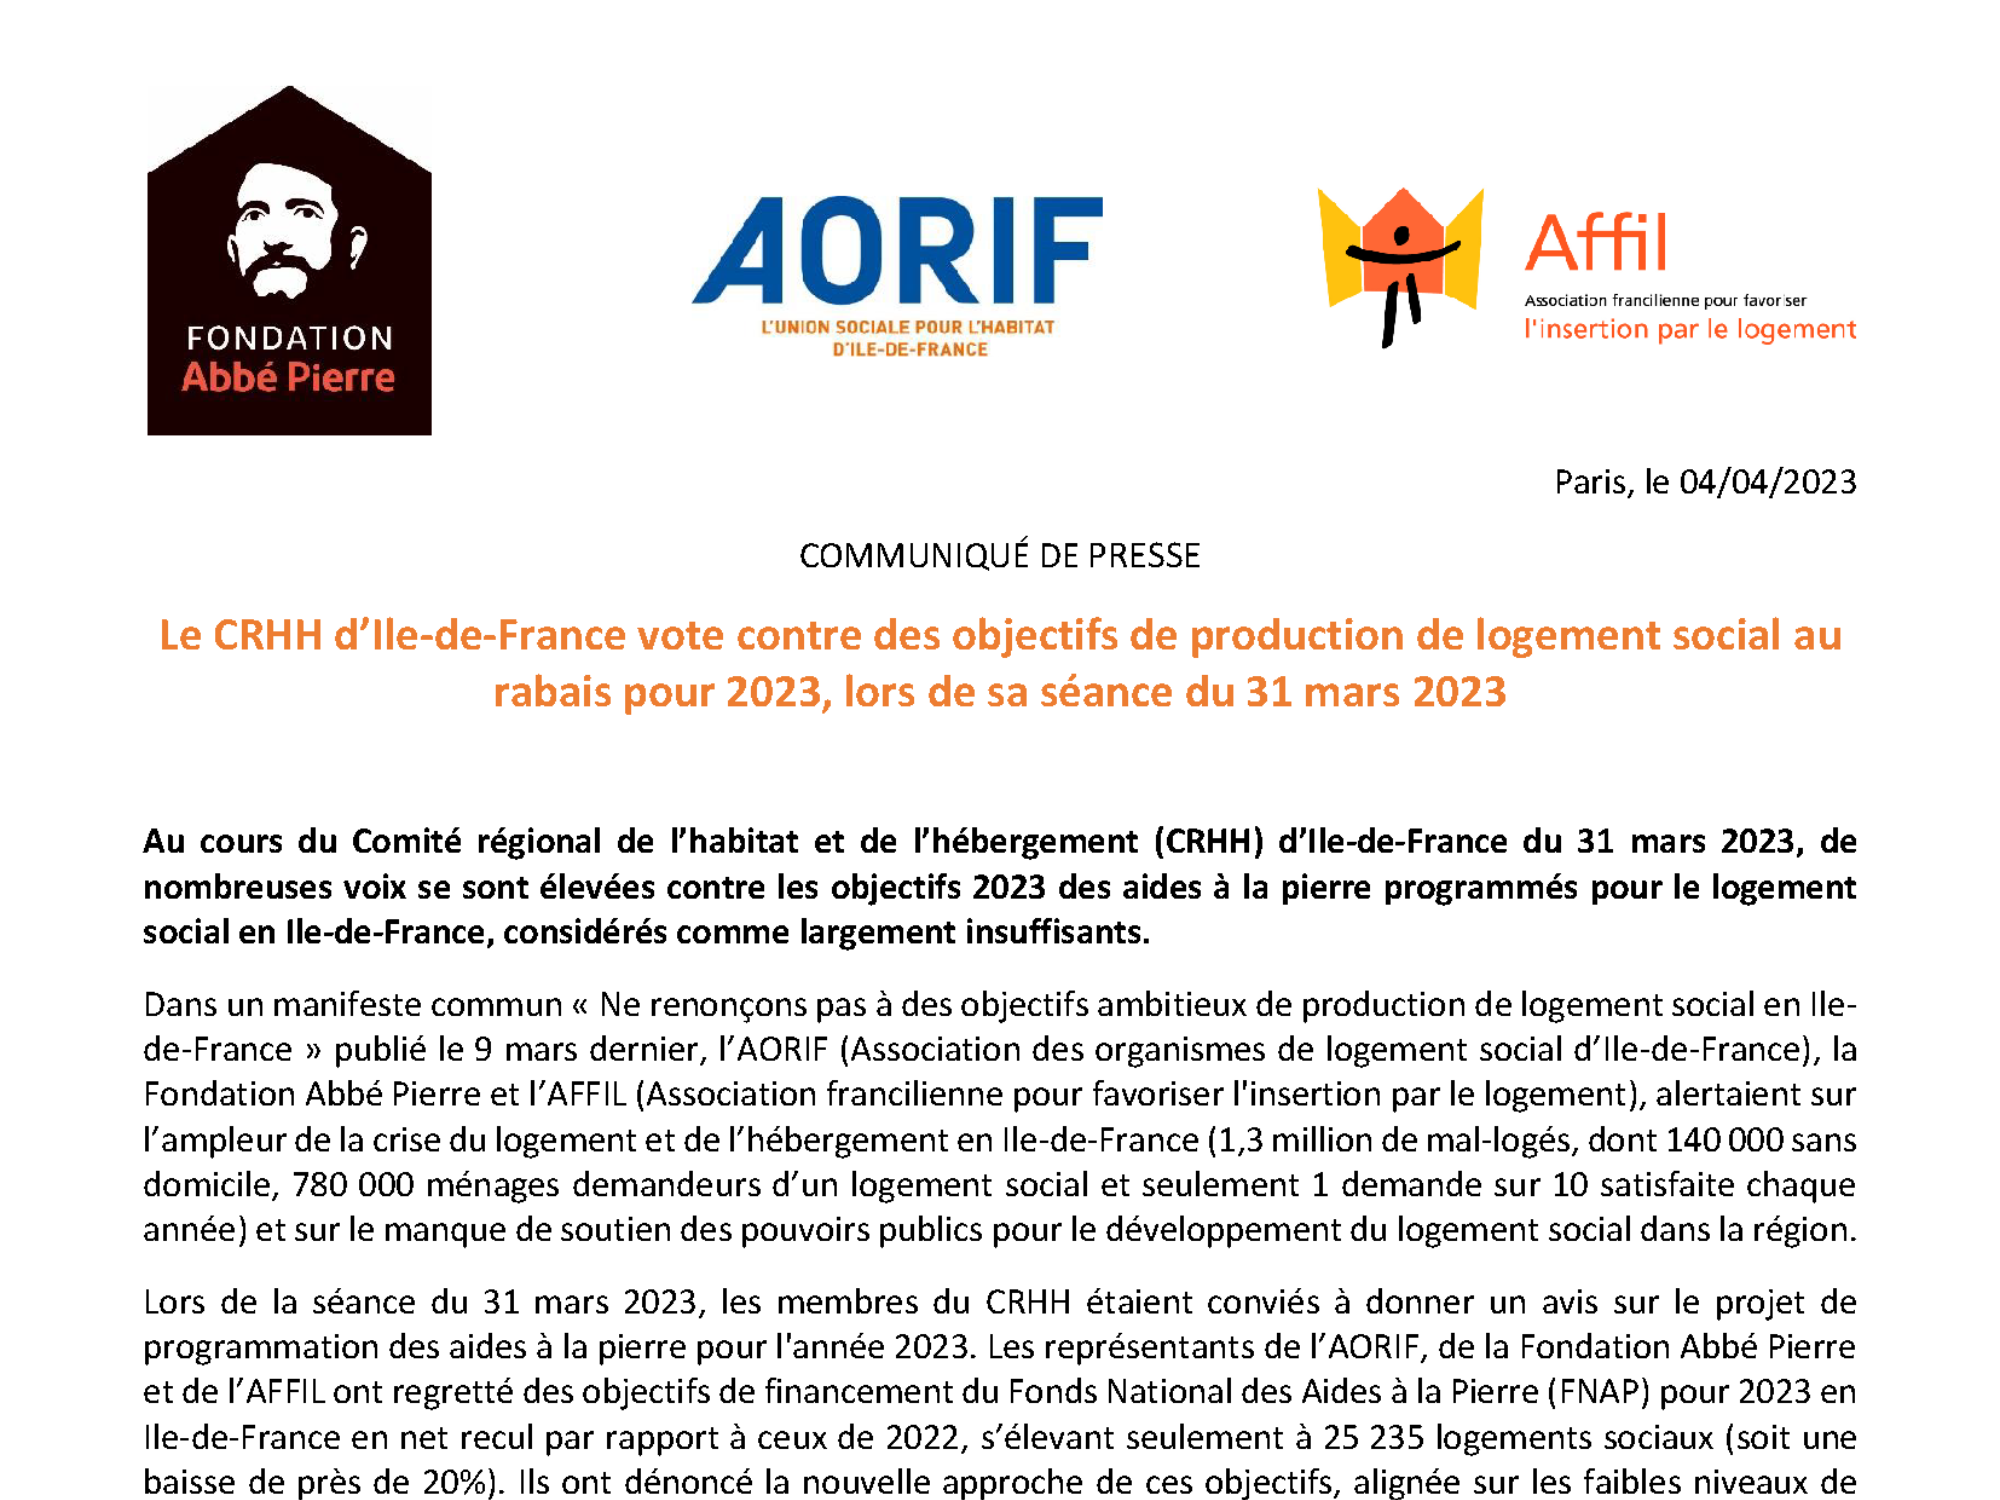 Communiqué de presse de la Fondation Abbé Pierre, de l’AORIF et de l’AFFIL concernant le CRHH d’Île-de-France